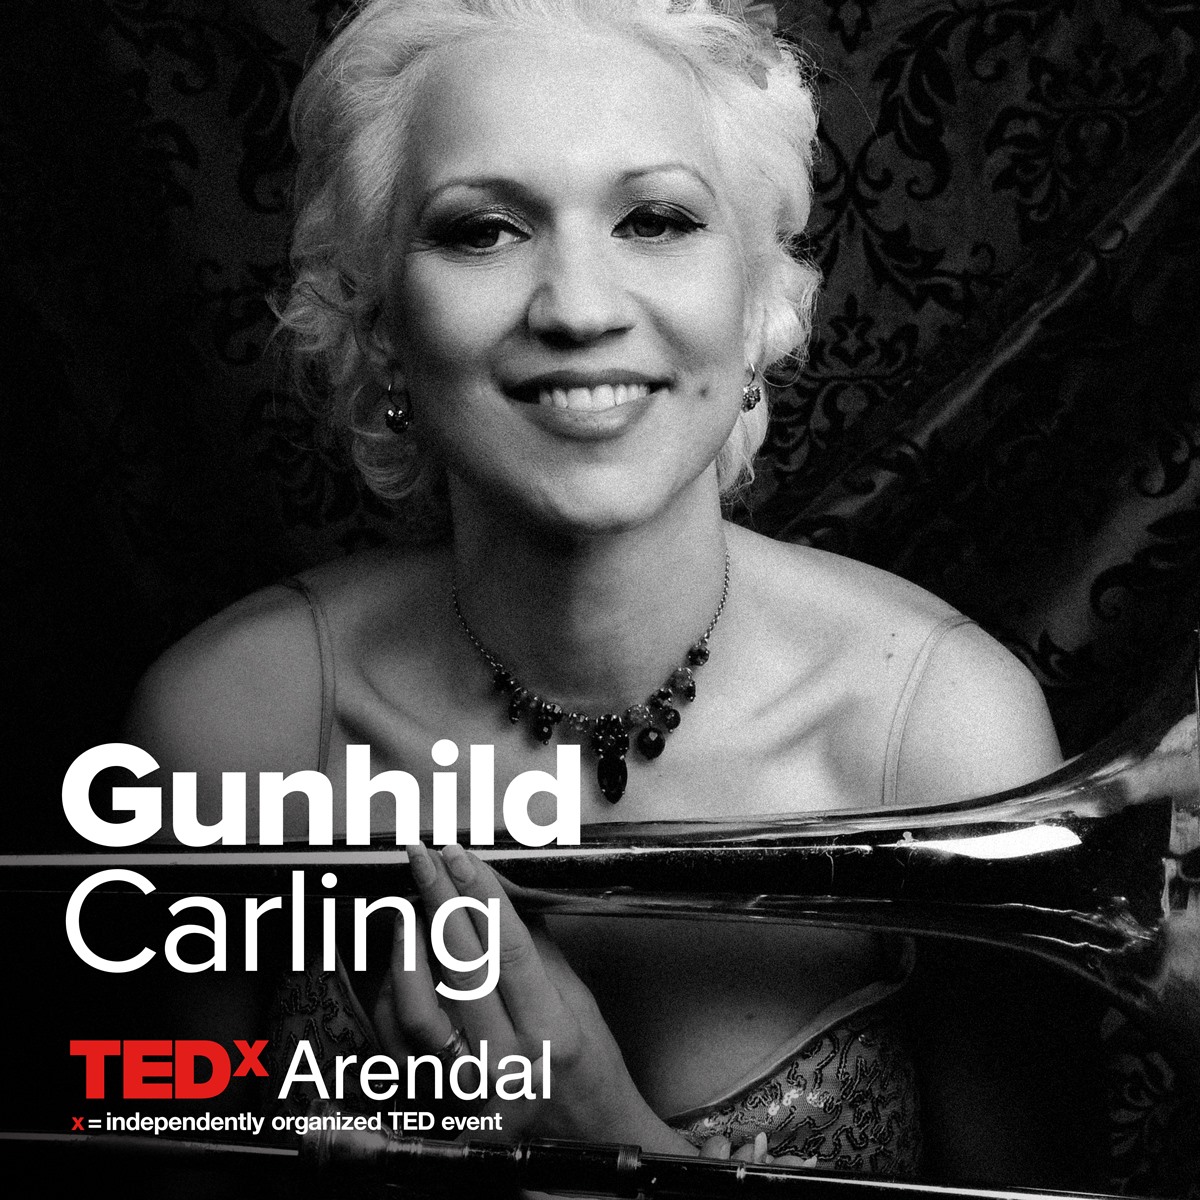 Gunhild Carling